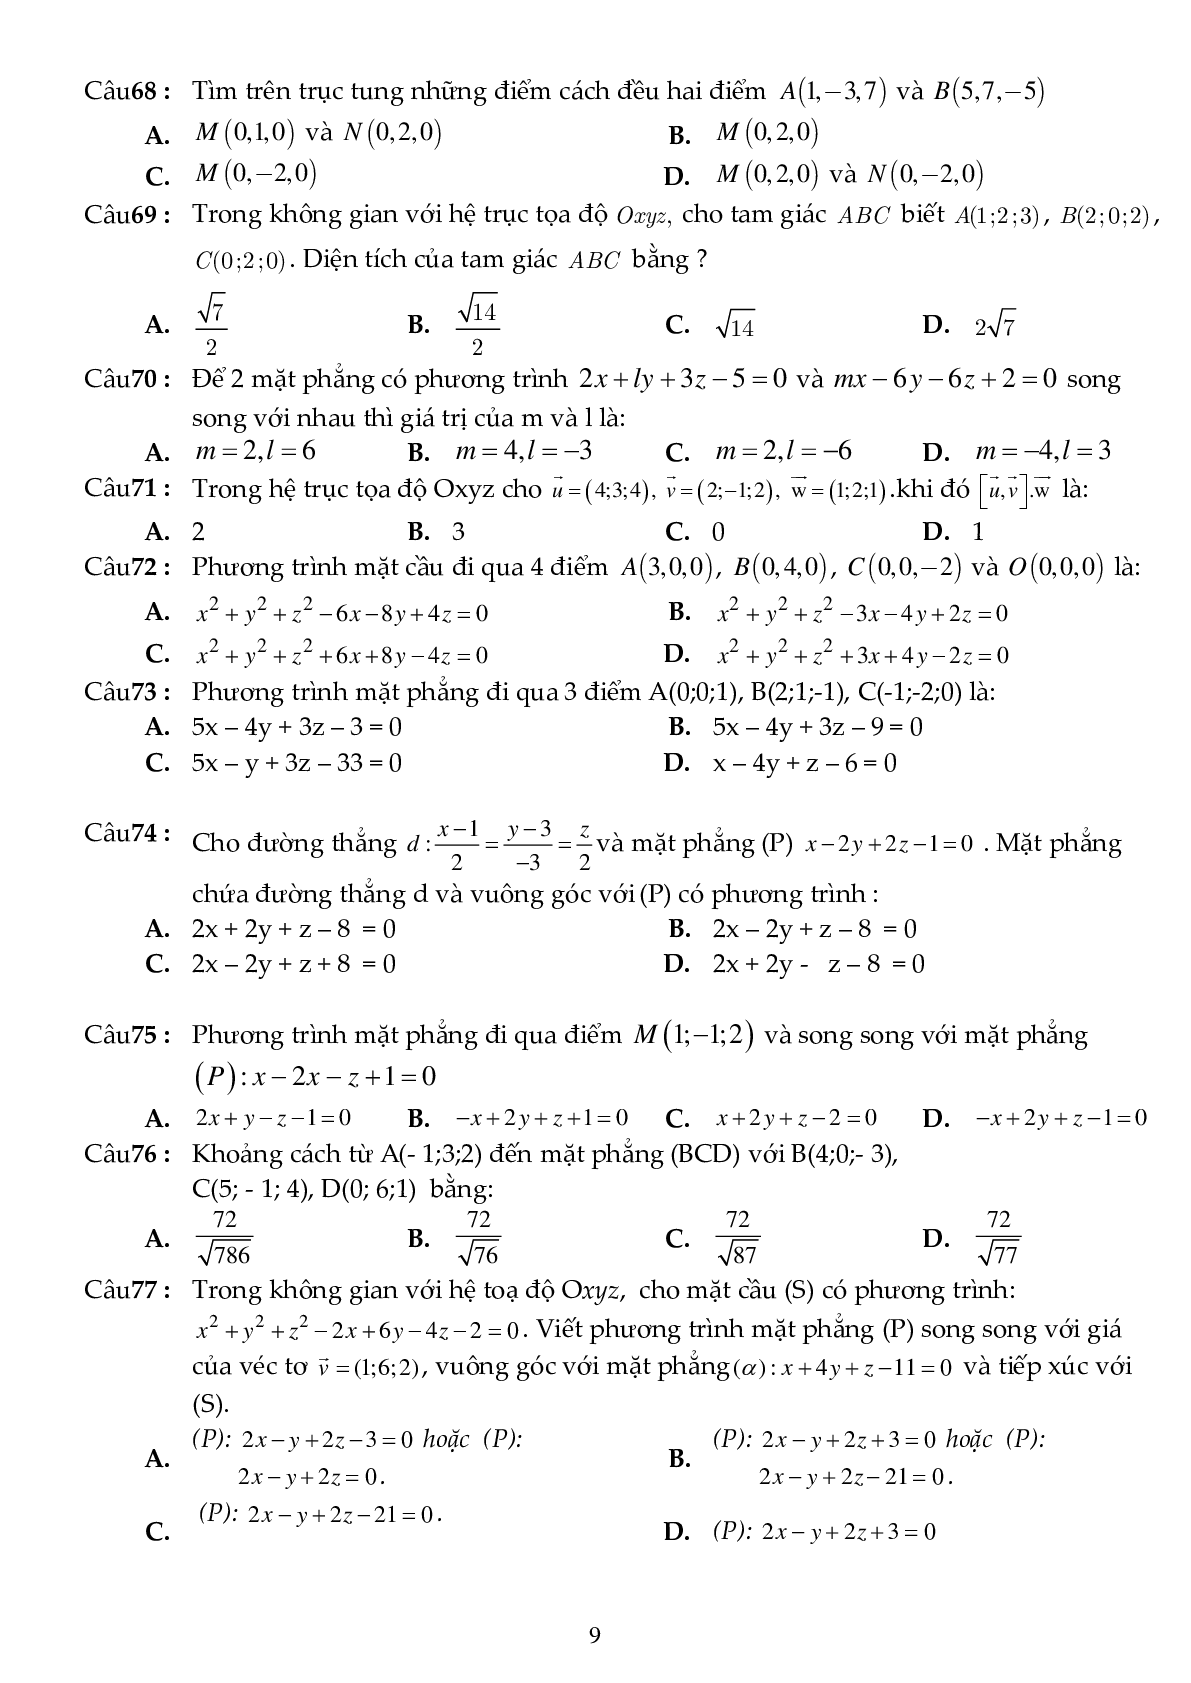 81 câu trắc nghiệm phương pháp tọa độ trong không gian - có đáp án (trang 9)